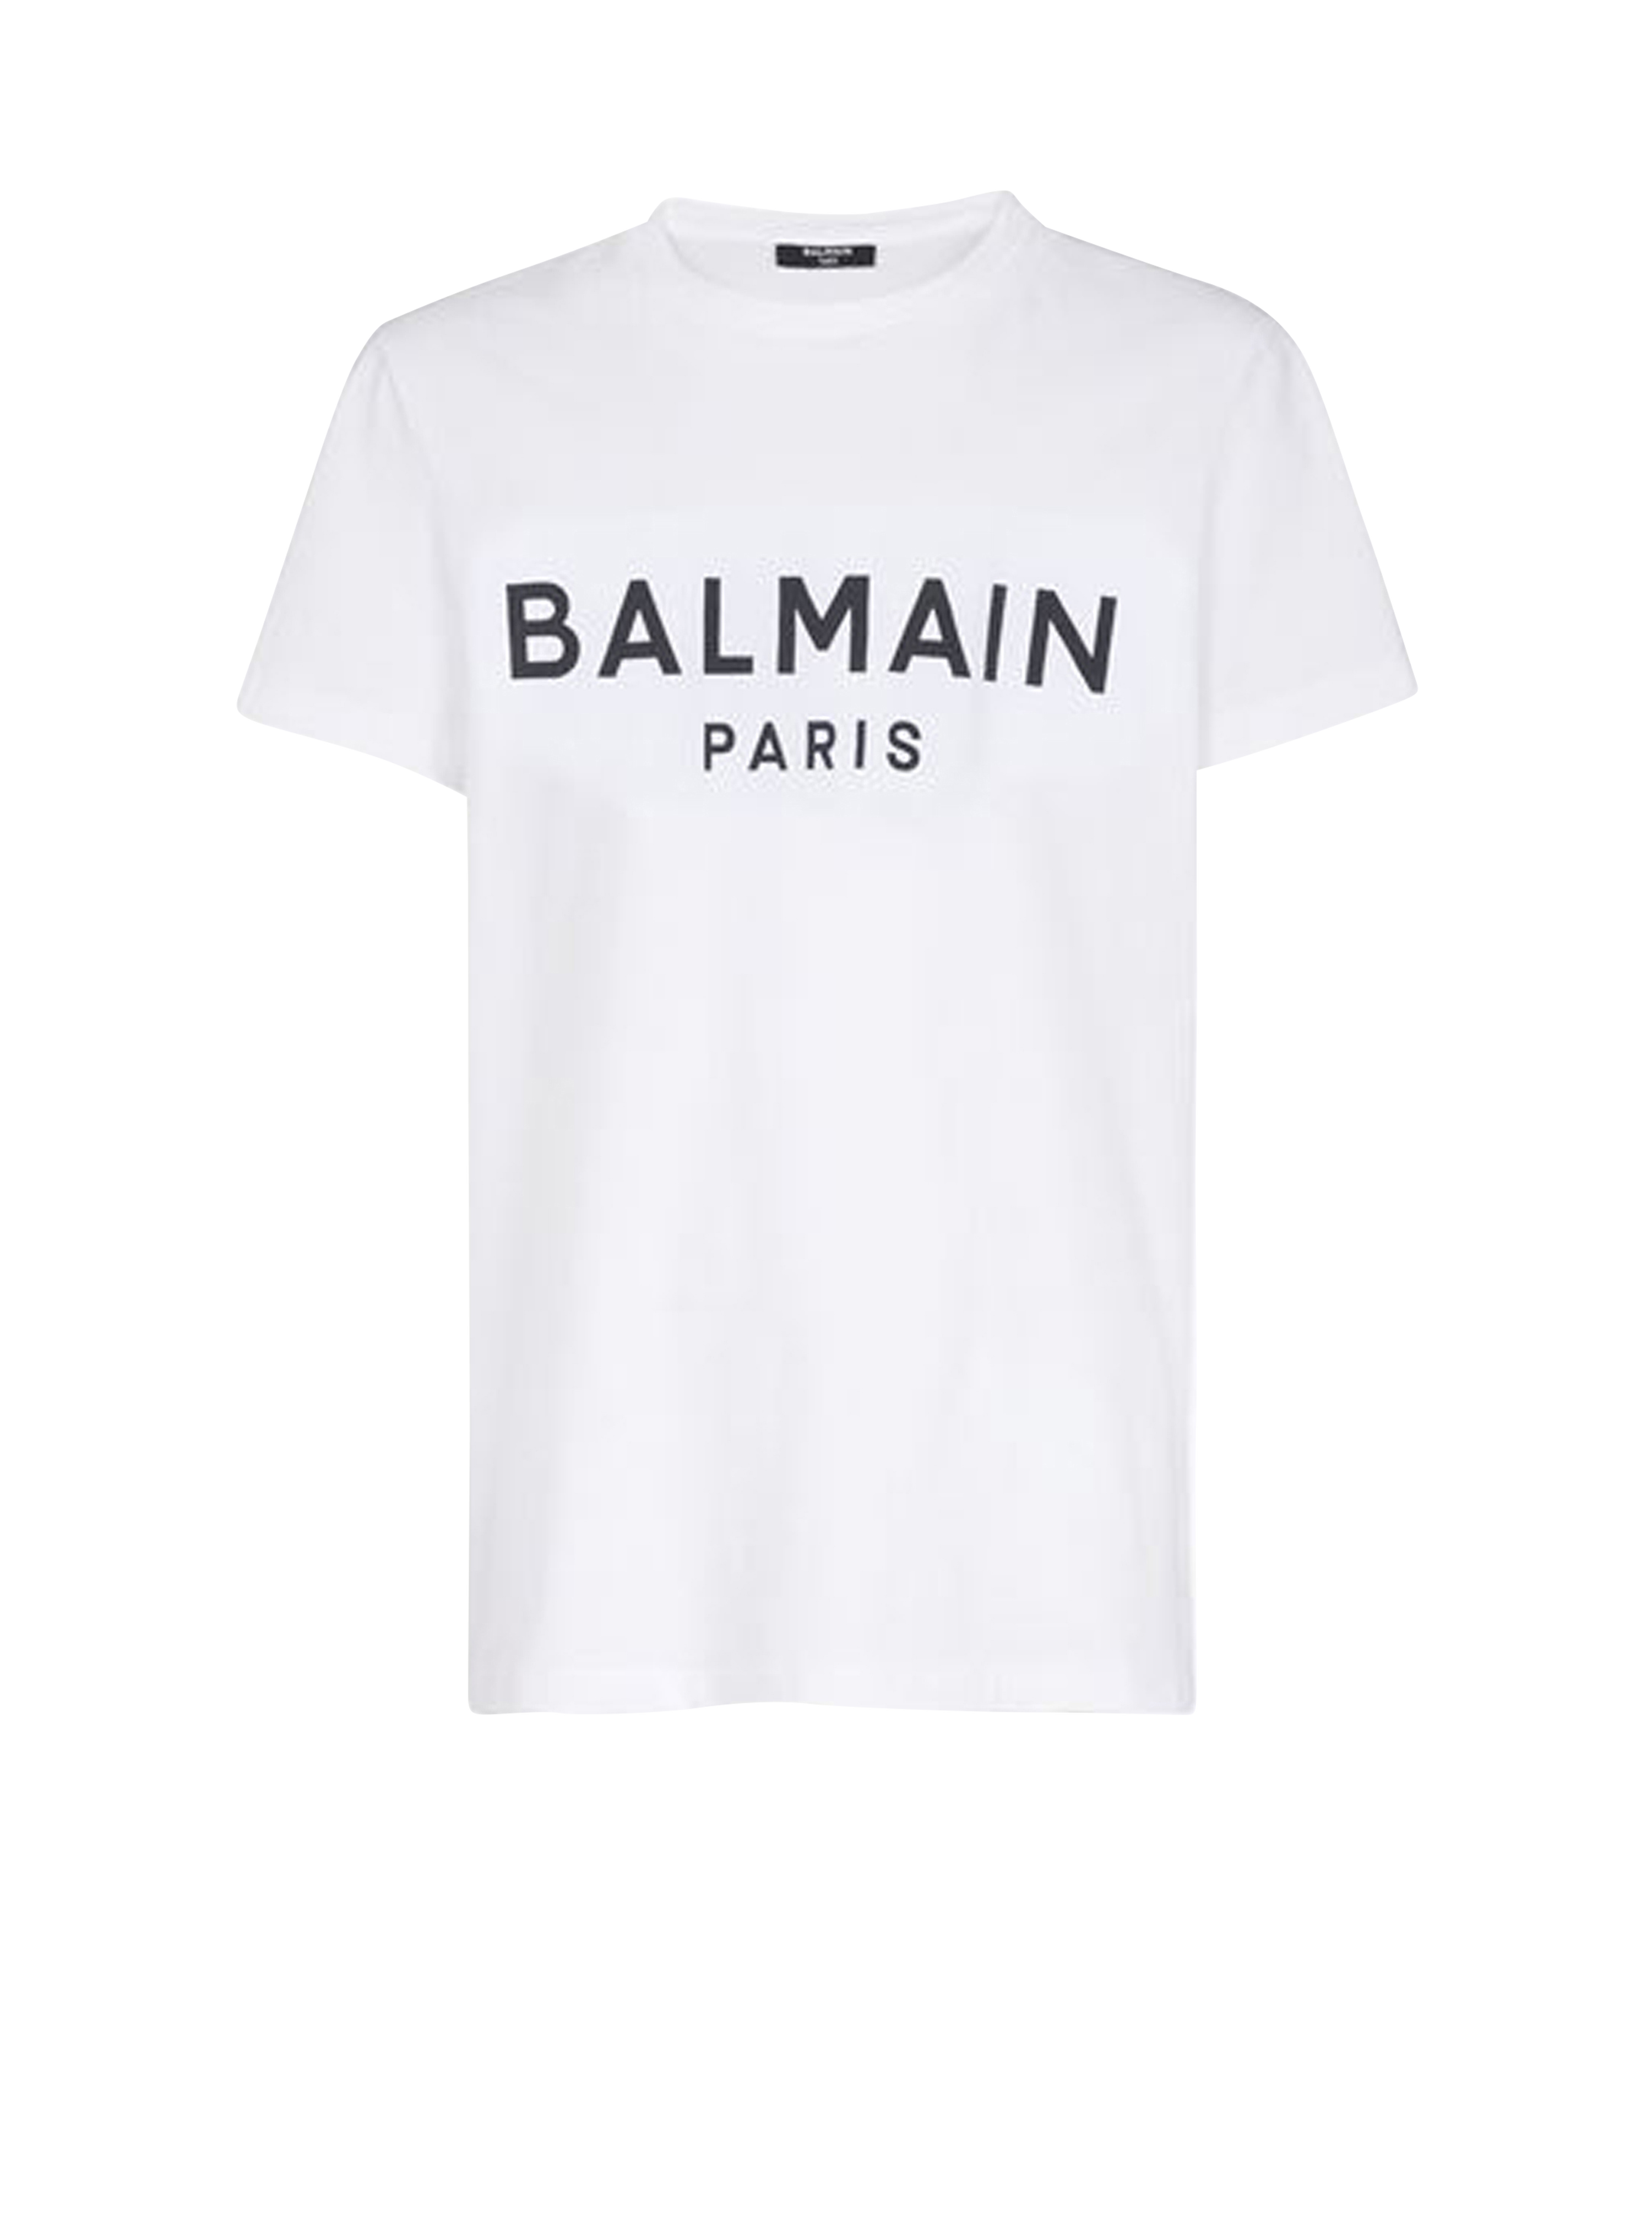 Camiseta de algodón de diseño ecológico con logotipo de Balmain flocado, blanco